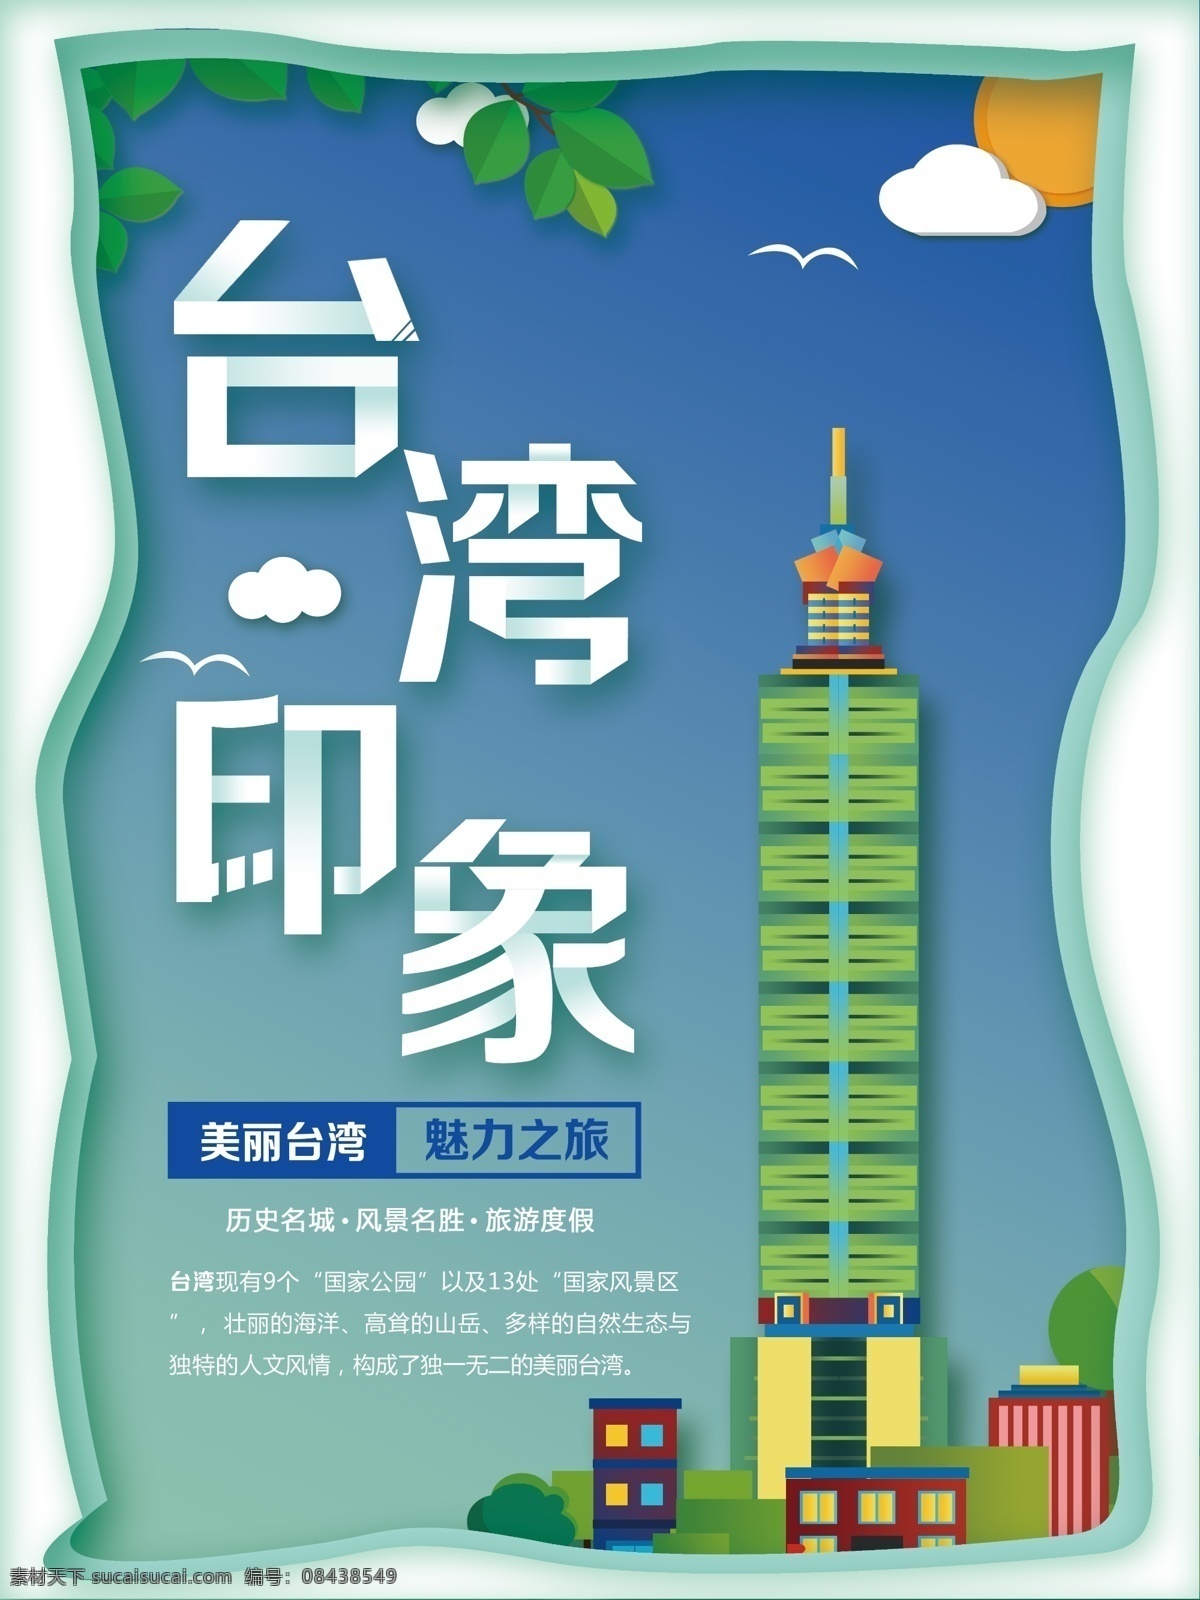 剪纸 风 蓝色 台湾 印象 旅游 海报 台湾印象 剪纸风 台湾旅游 台湾之旅